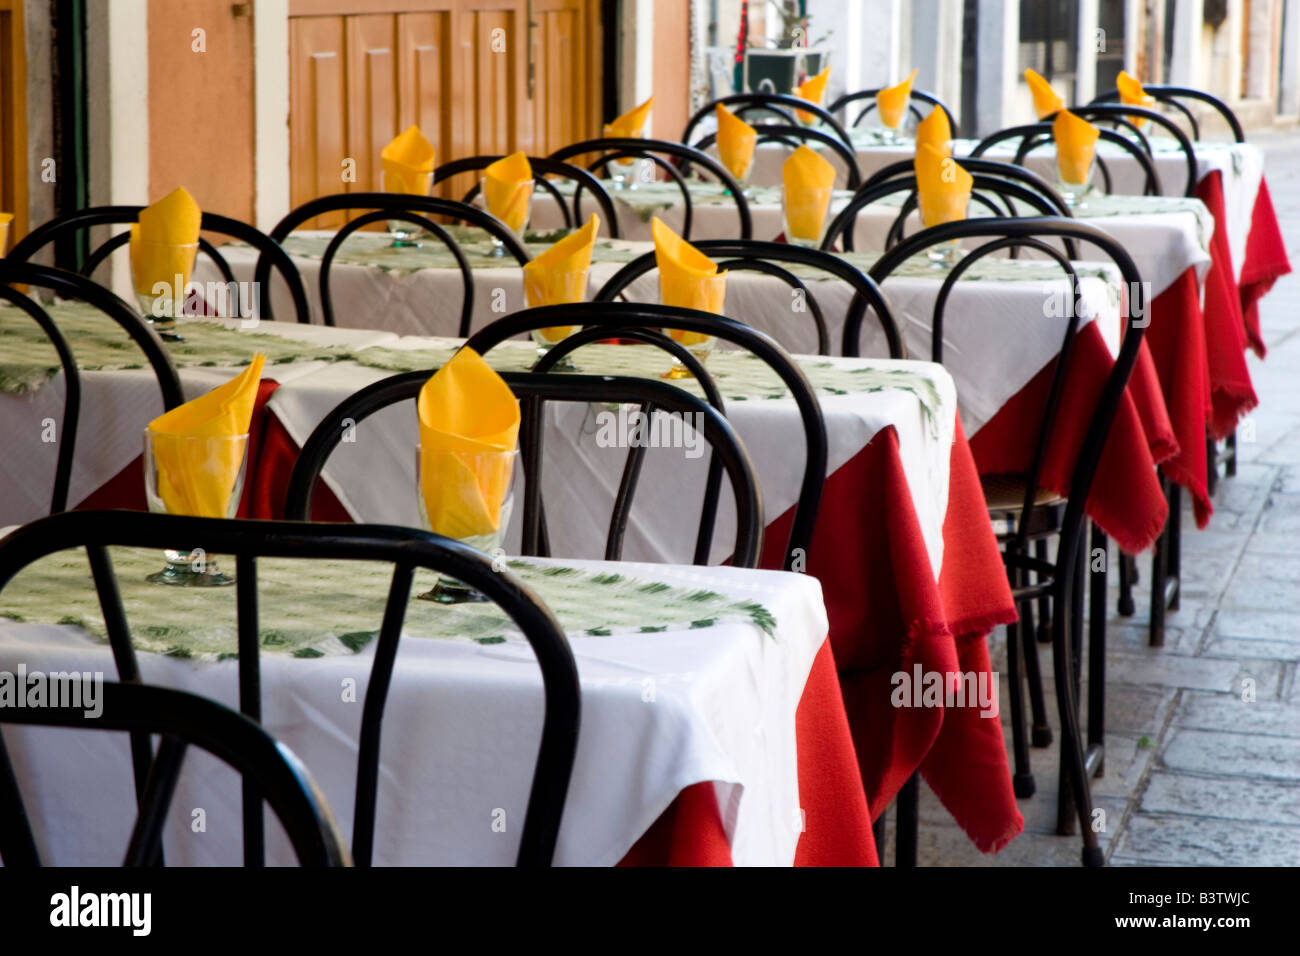 L'Europe, Italie, Venise. Une rangée de tables colorés à la terrasse d'un café. Banque D'Images